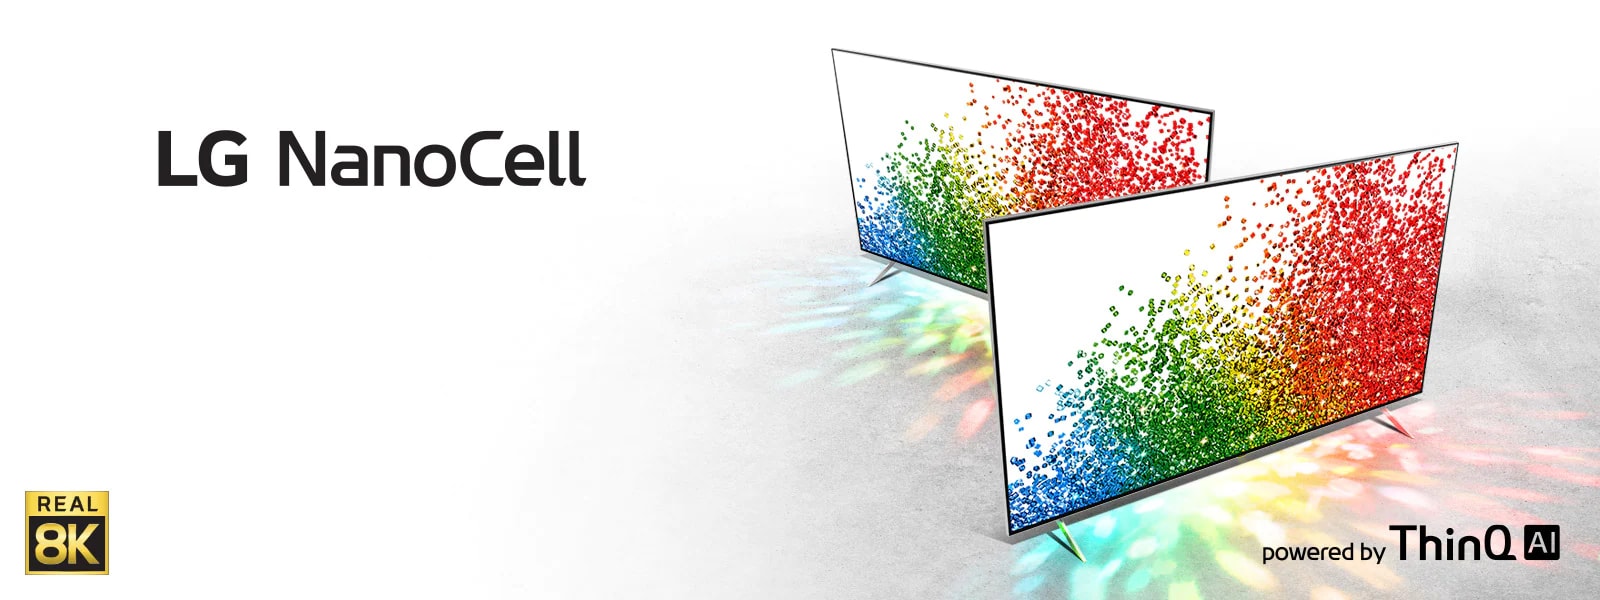 Маючи природні, реалістичні кольори й роздільну здатність 8К відповідно до стандартів галузі, телевізори LG NanoCell 8K оживляють ваші улюблені фільми, спортивні події та ігри.